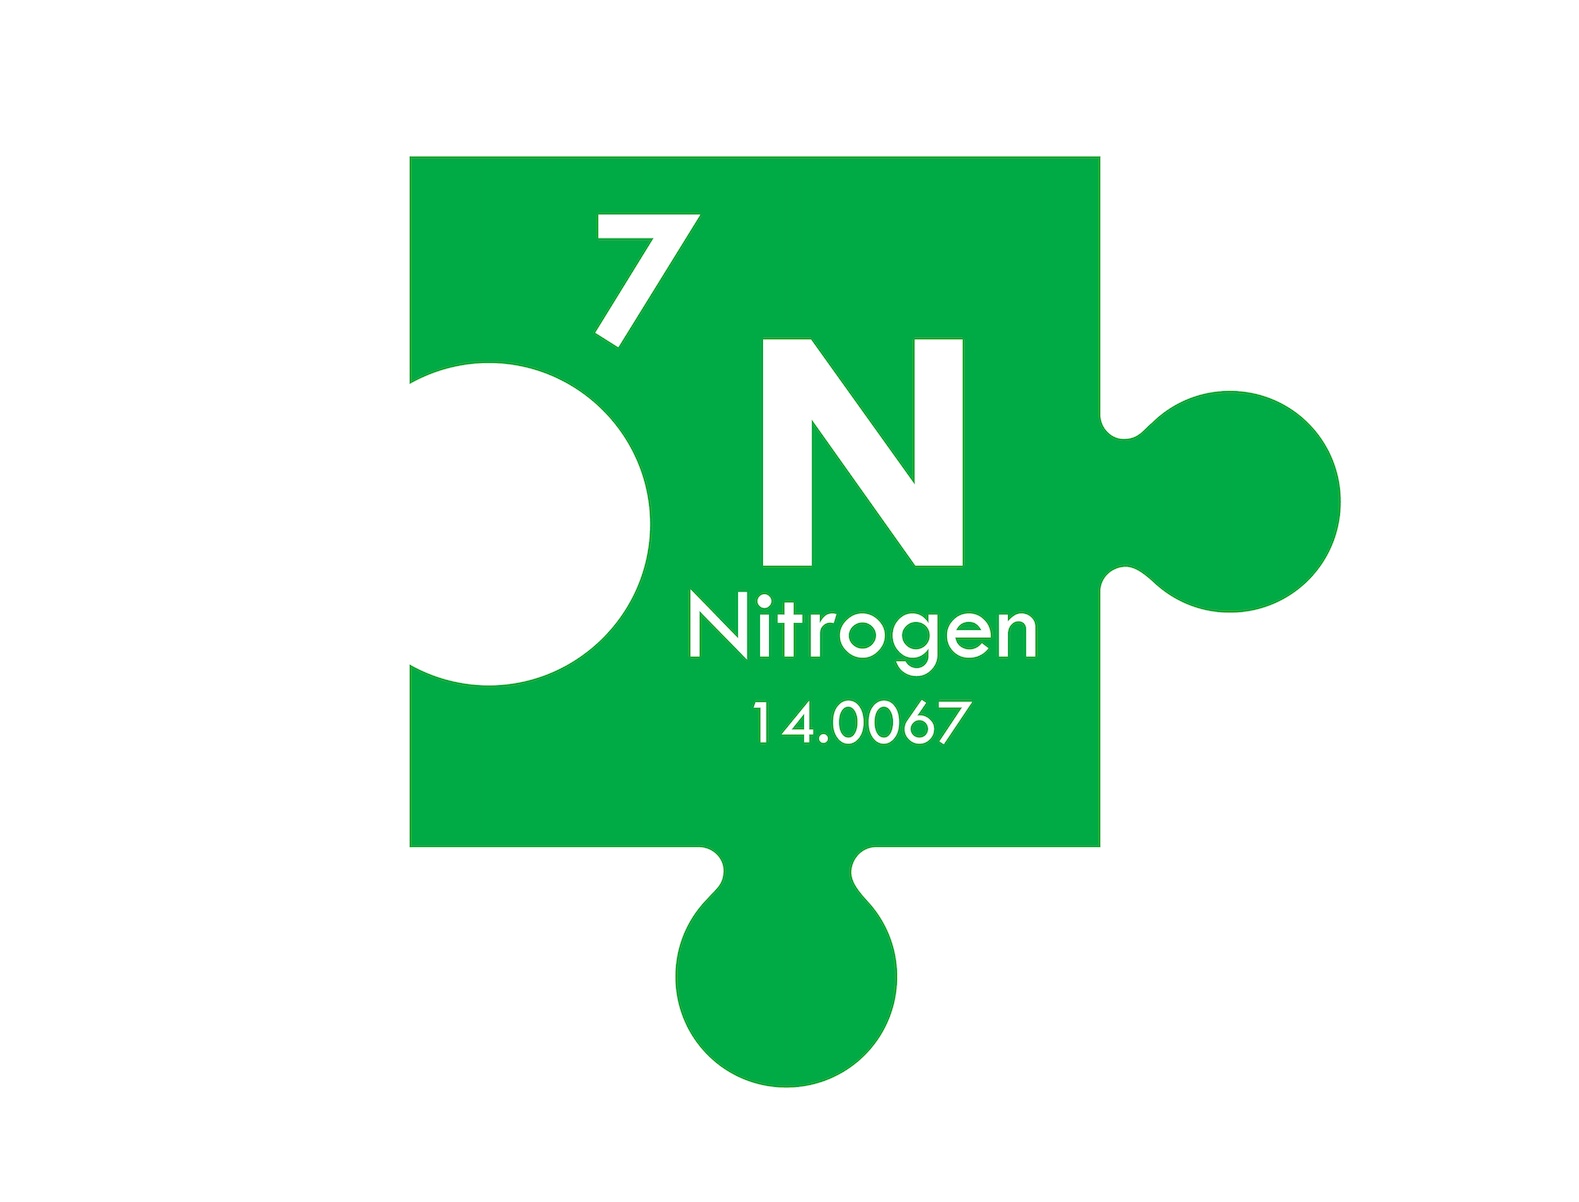 Nitrogen puzzle piece